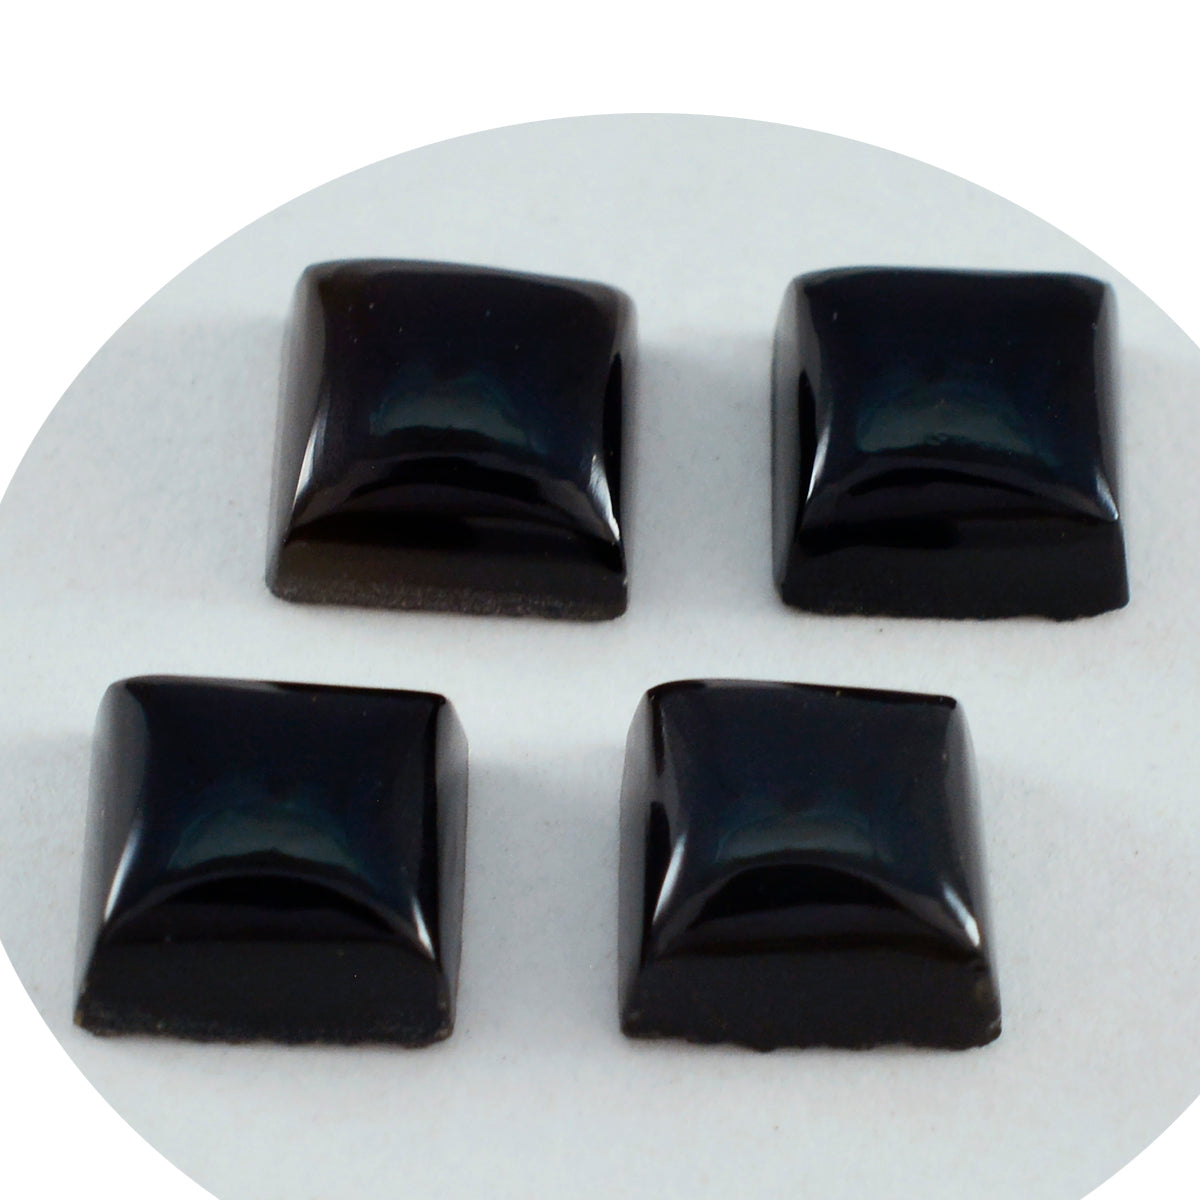 Riyogems 1 Stück schwarzer Onyx-Cabochon, 15 x 15 mm, quadratische Form, Schönheitsqualität, loser Edelstein